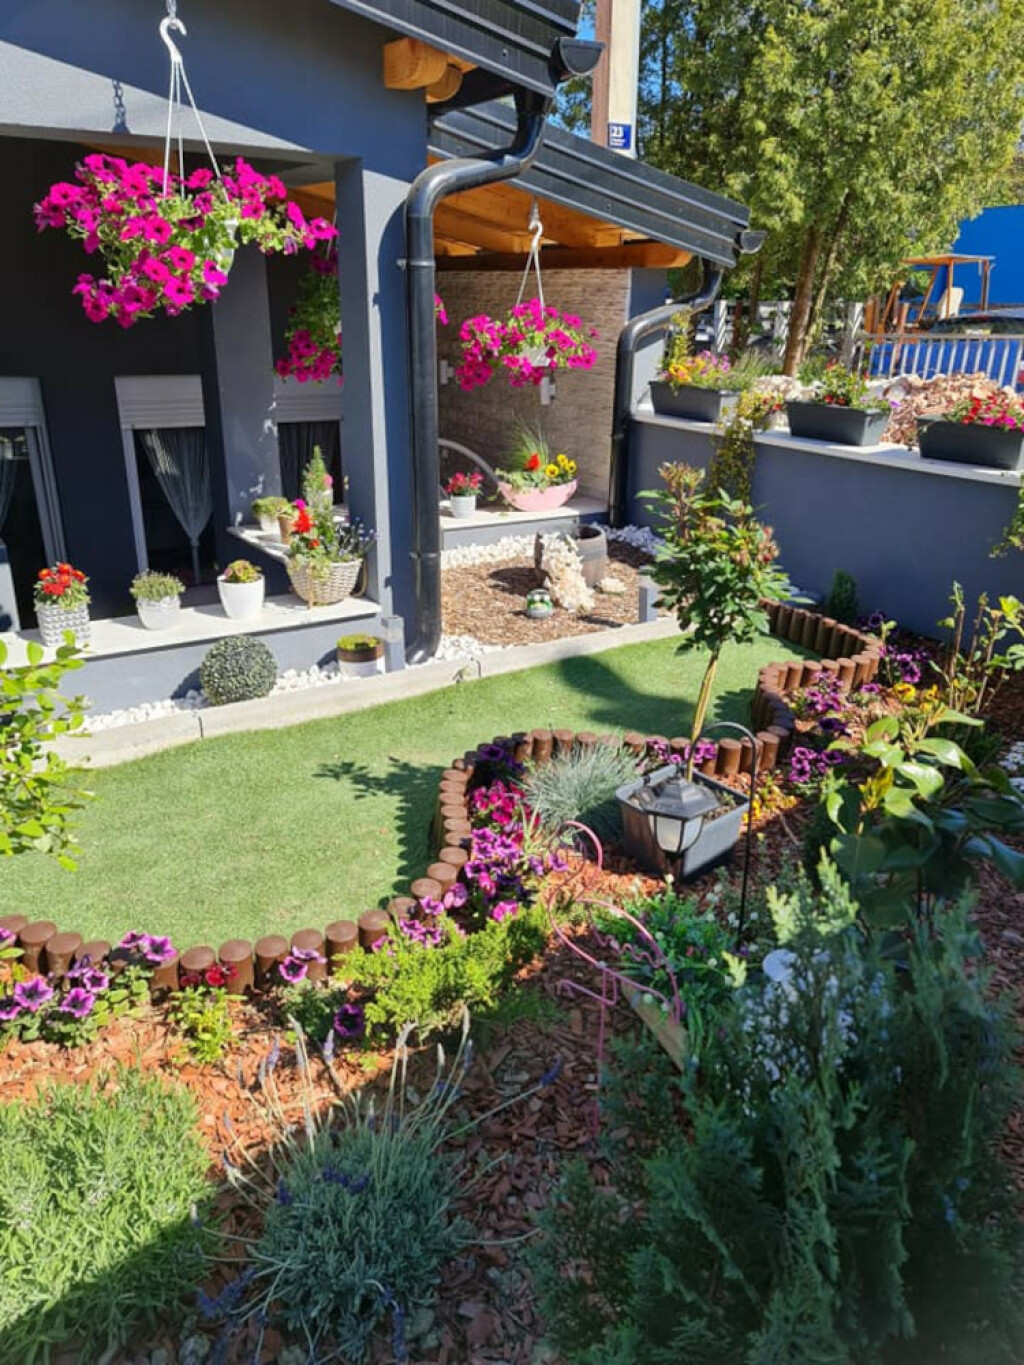 Ispred stana nalazi se mala ljetna terasa na kojoj Željka uživa za lijepog vremena, kao i u svom vrtu punom cvijeća - 1